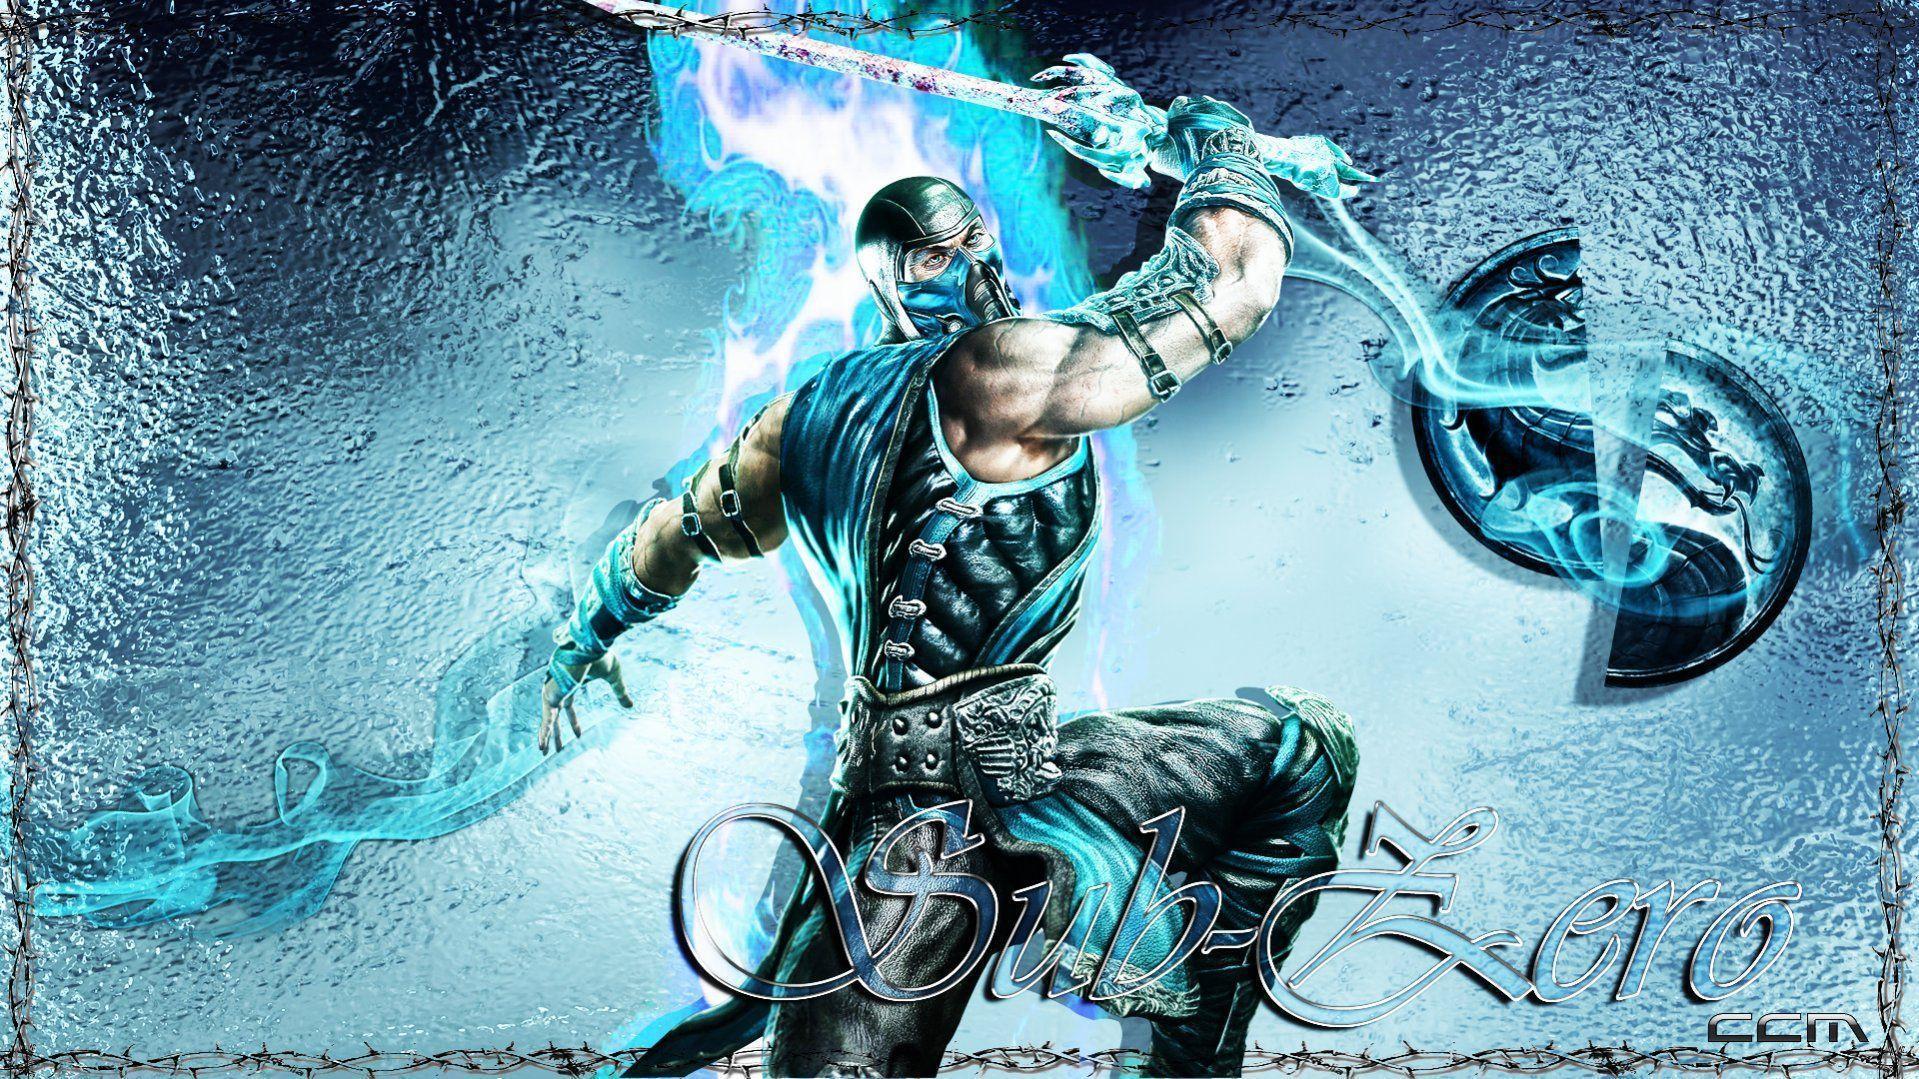 Sub Zero Wallpaper Mortal Kombat 9 15 Tattoo 2011 Picture